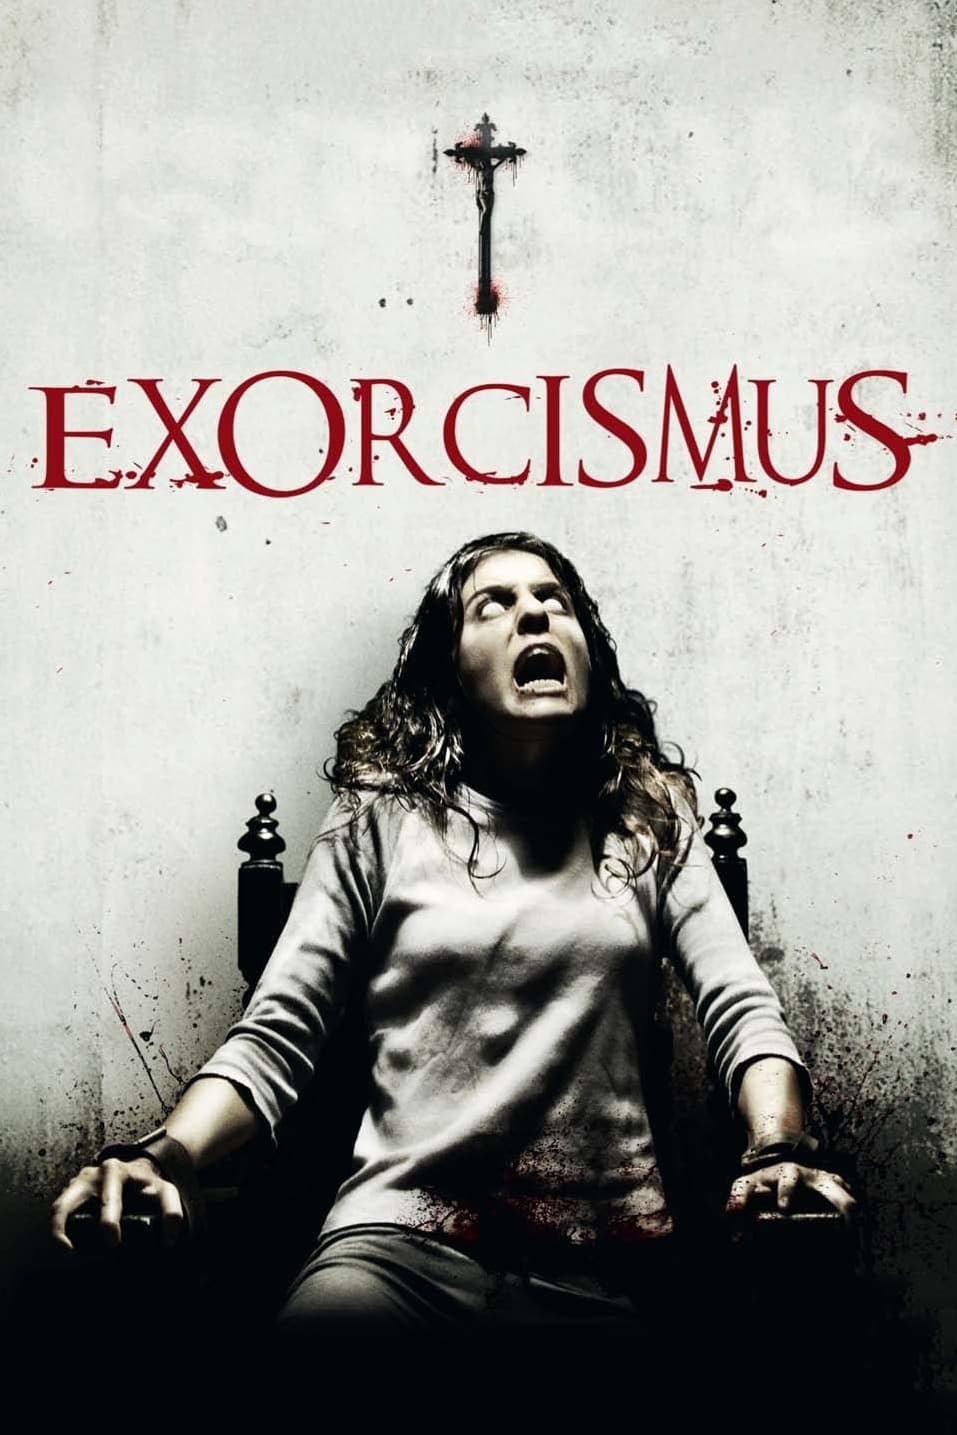 Exorcismus (2010)